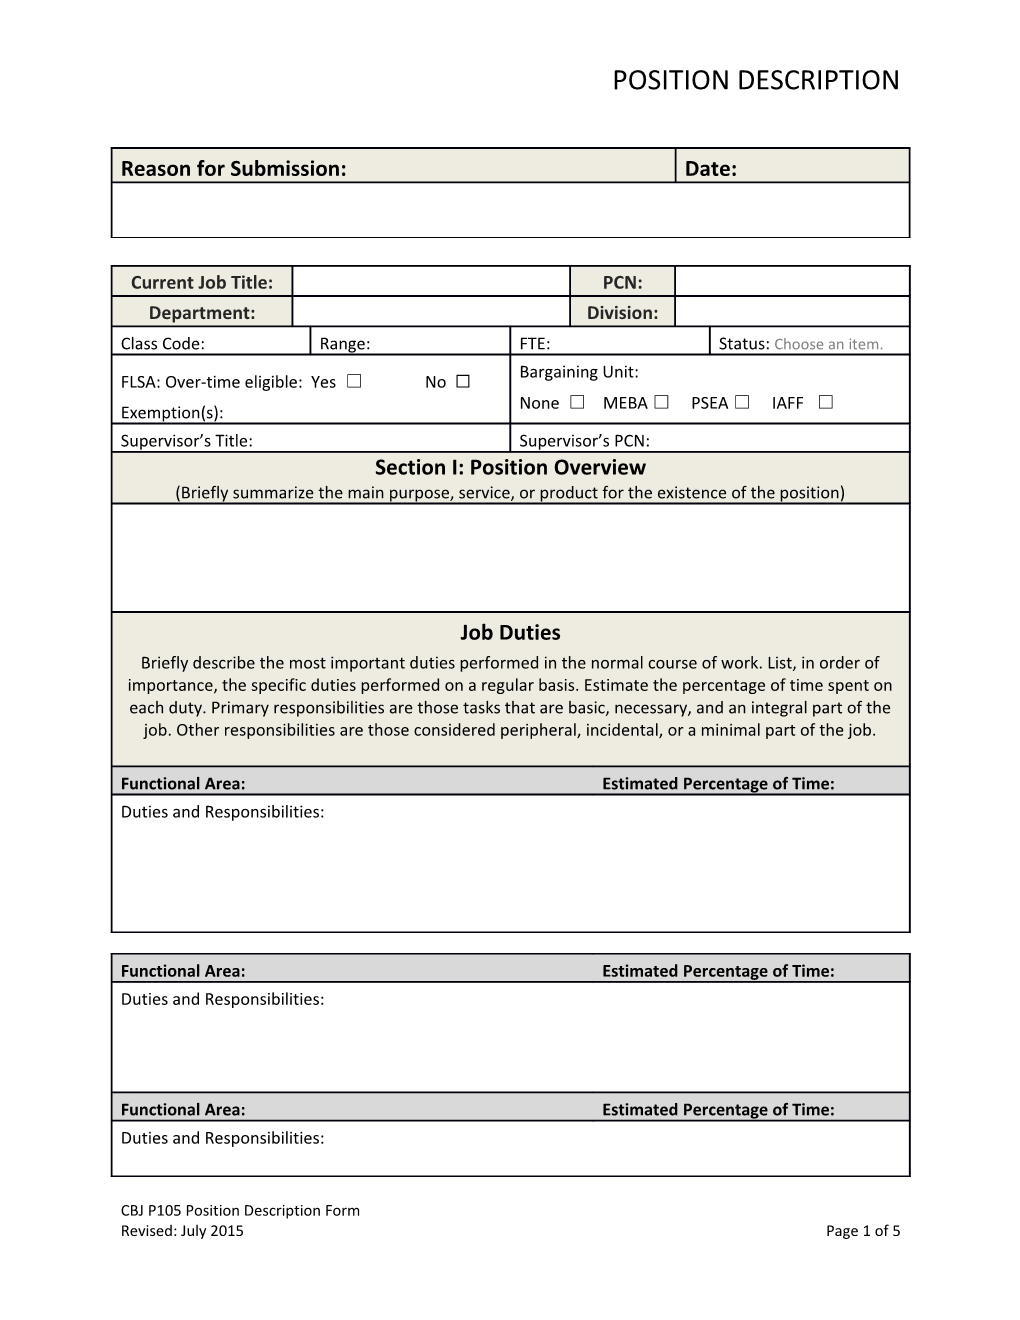 CBJ P105 Position Description Form